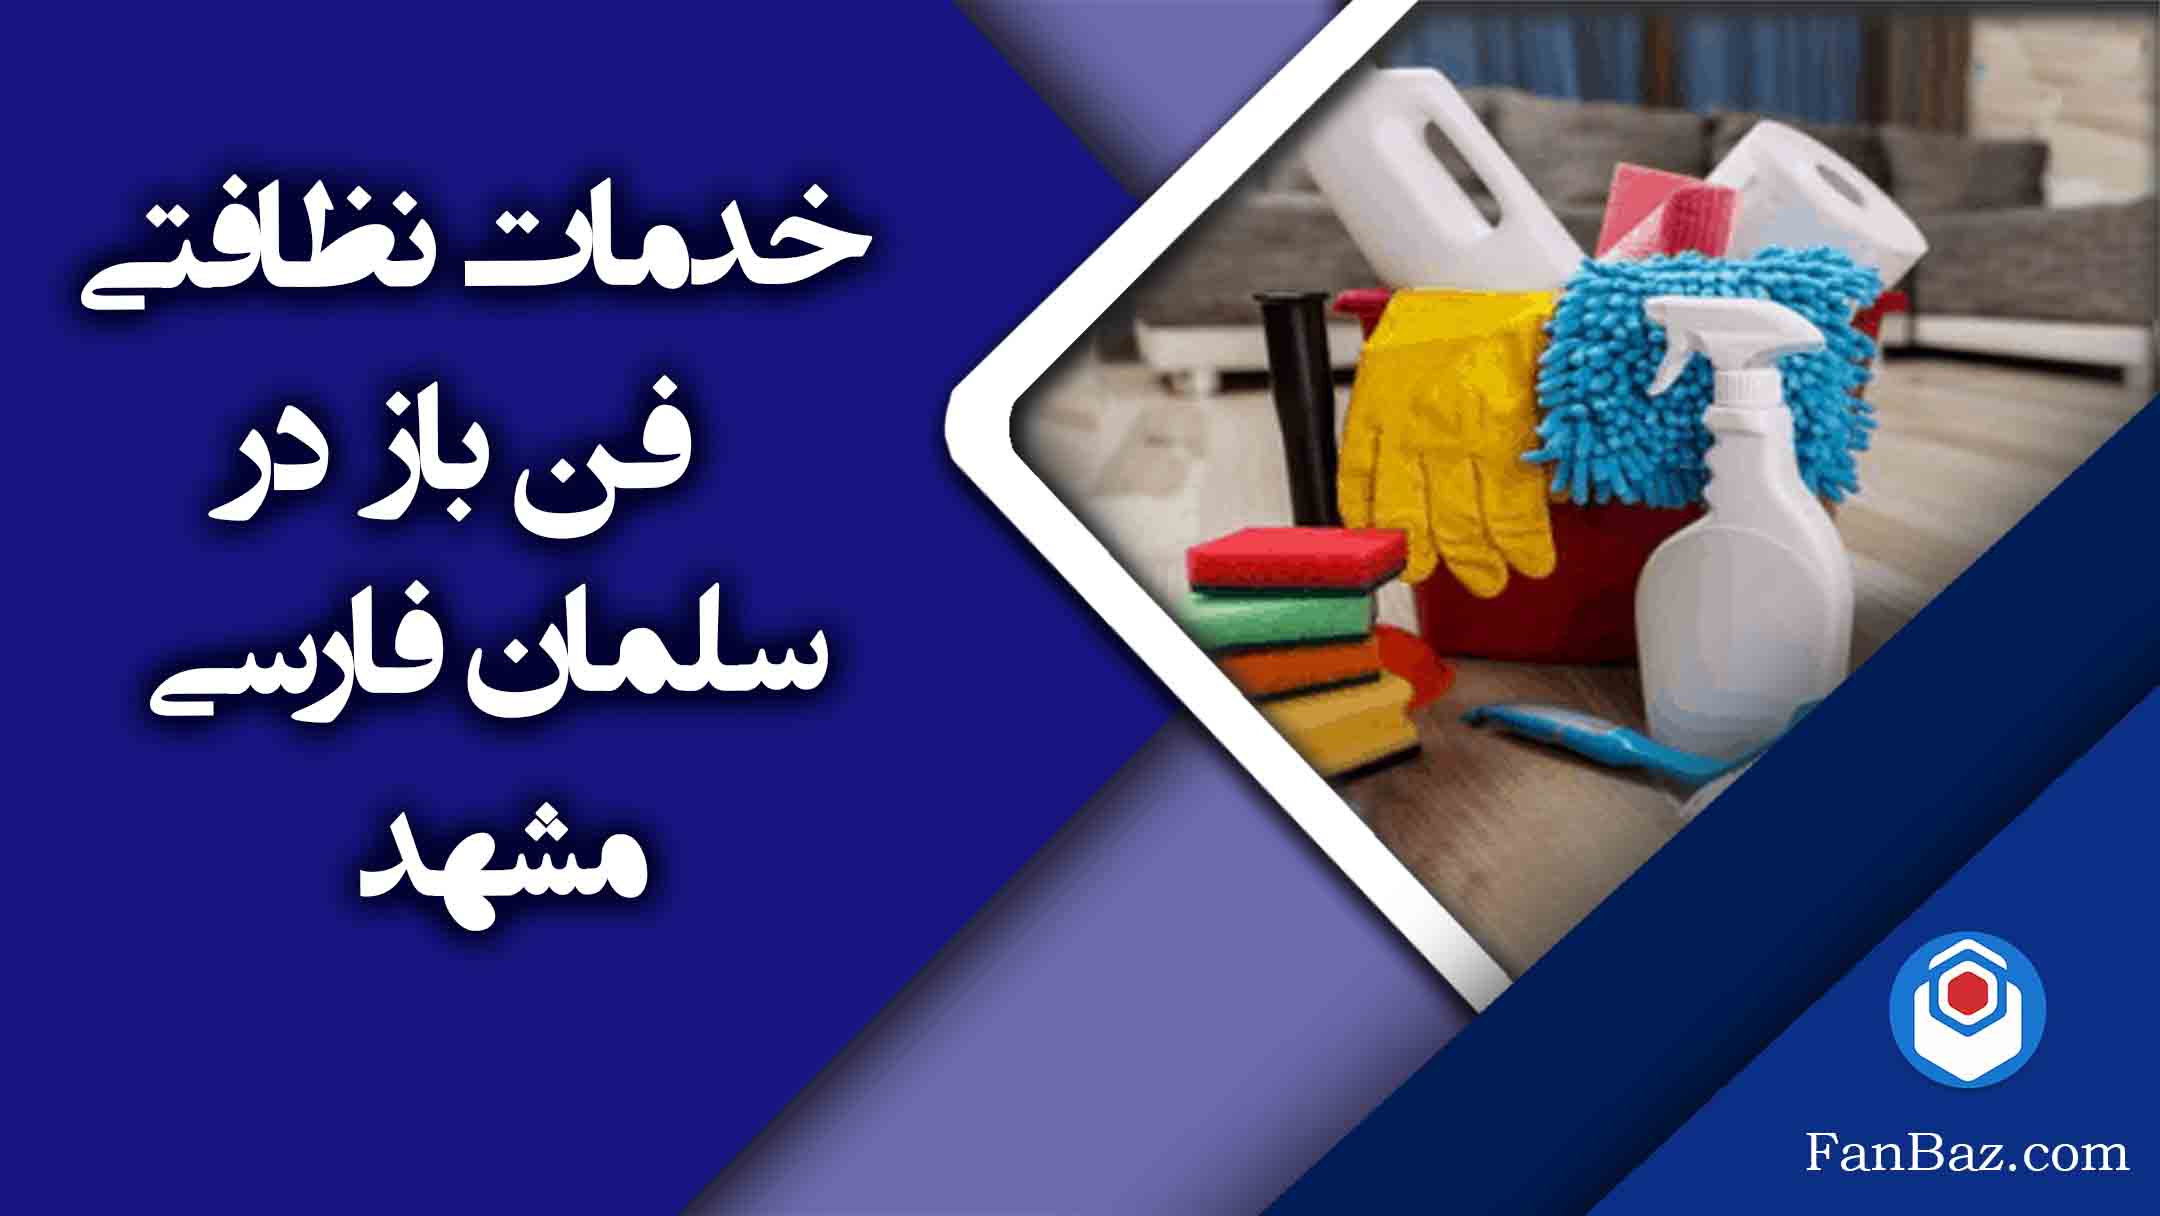 خدمات نظافتی فن باز در سلمان فارسی مشهد